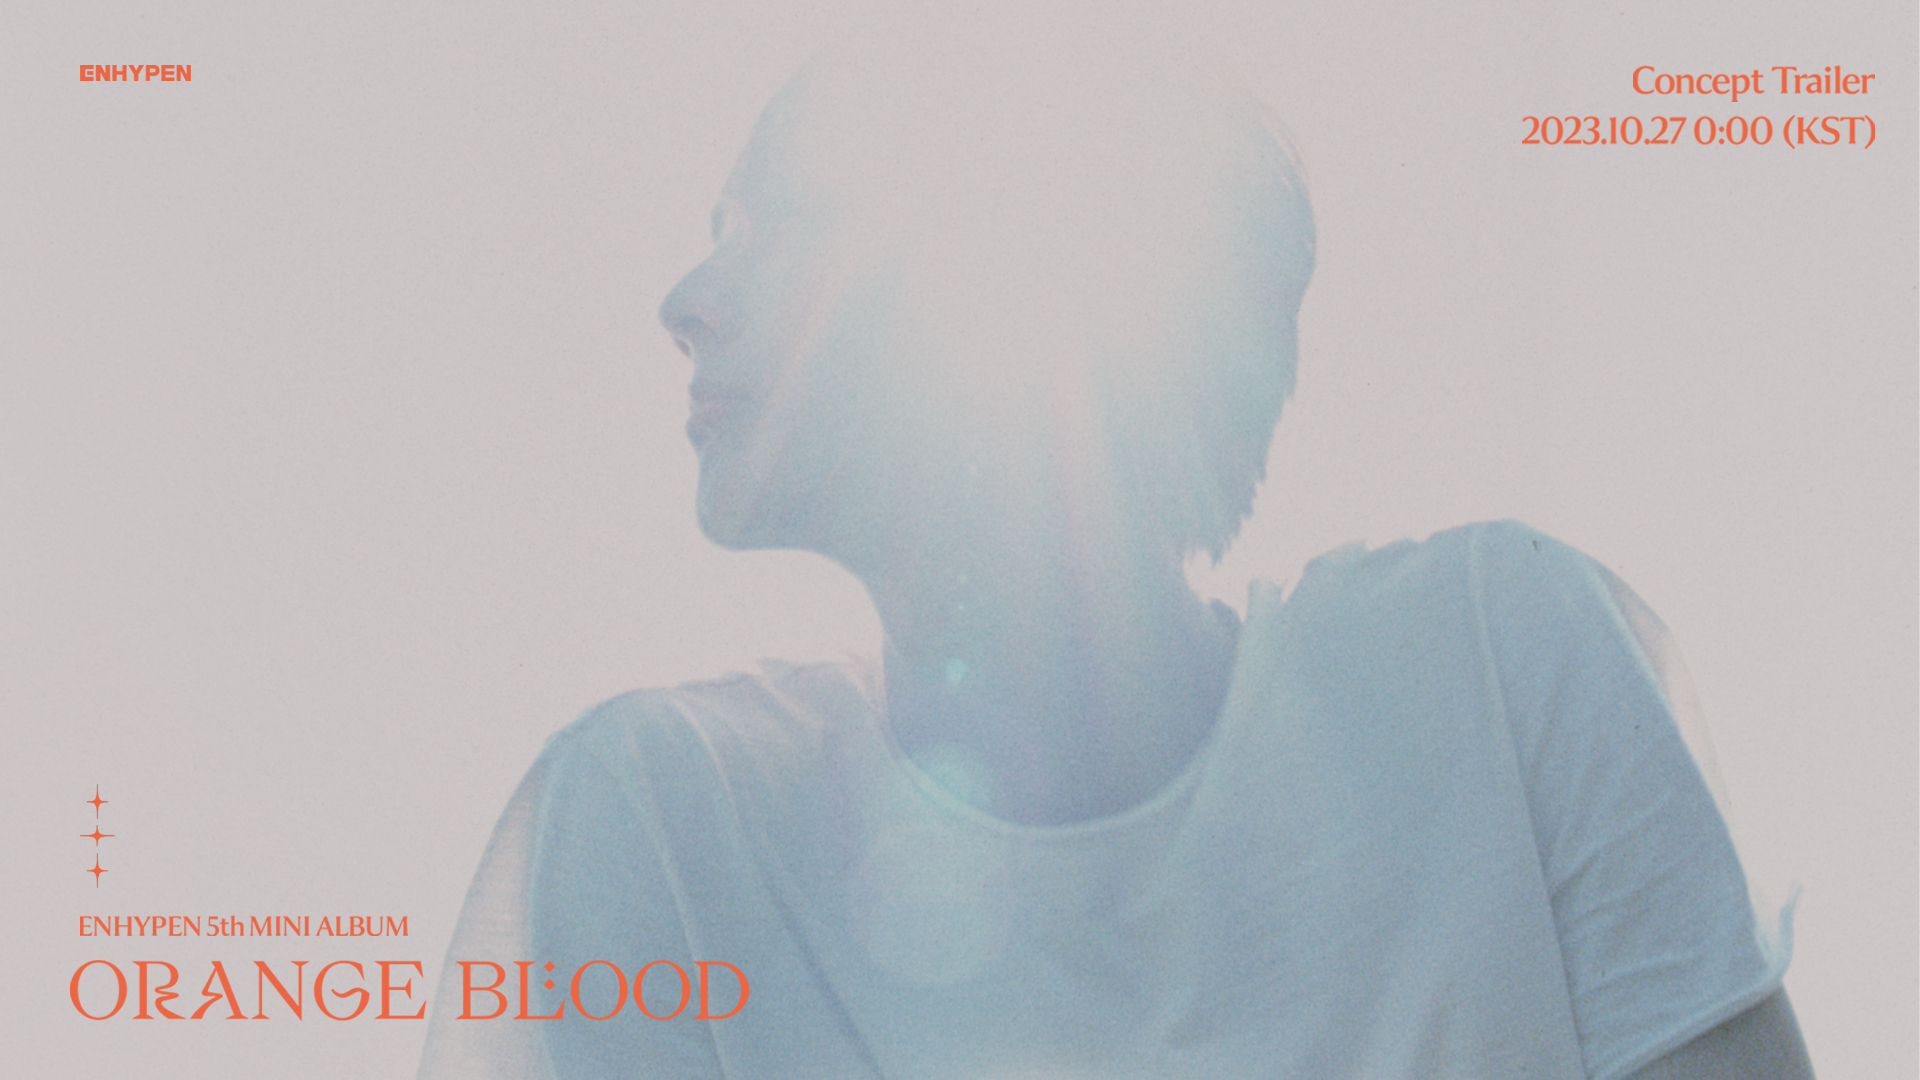 ENHYPEN 5thミニアルバム「ORANGE BLOOD」のコンセプトトレーラースチールカットを公開